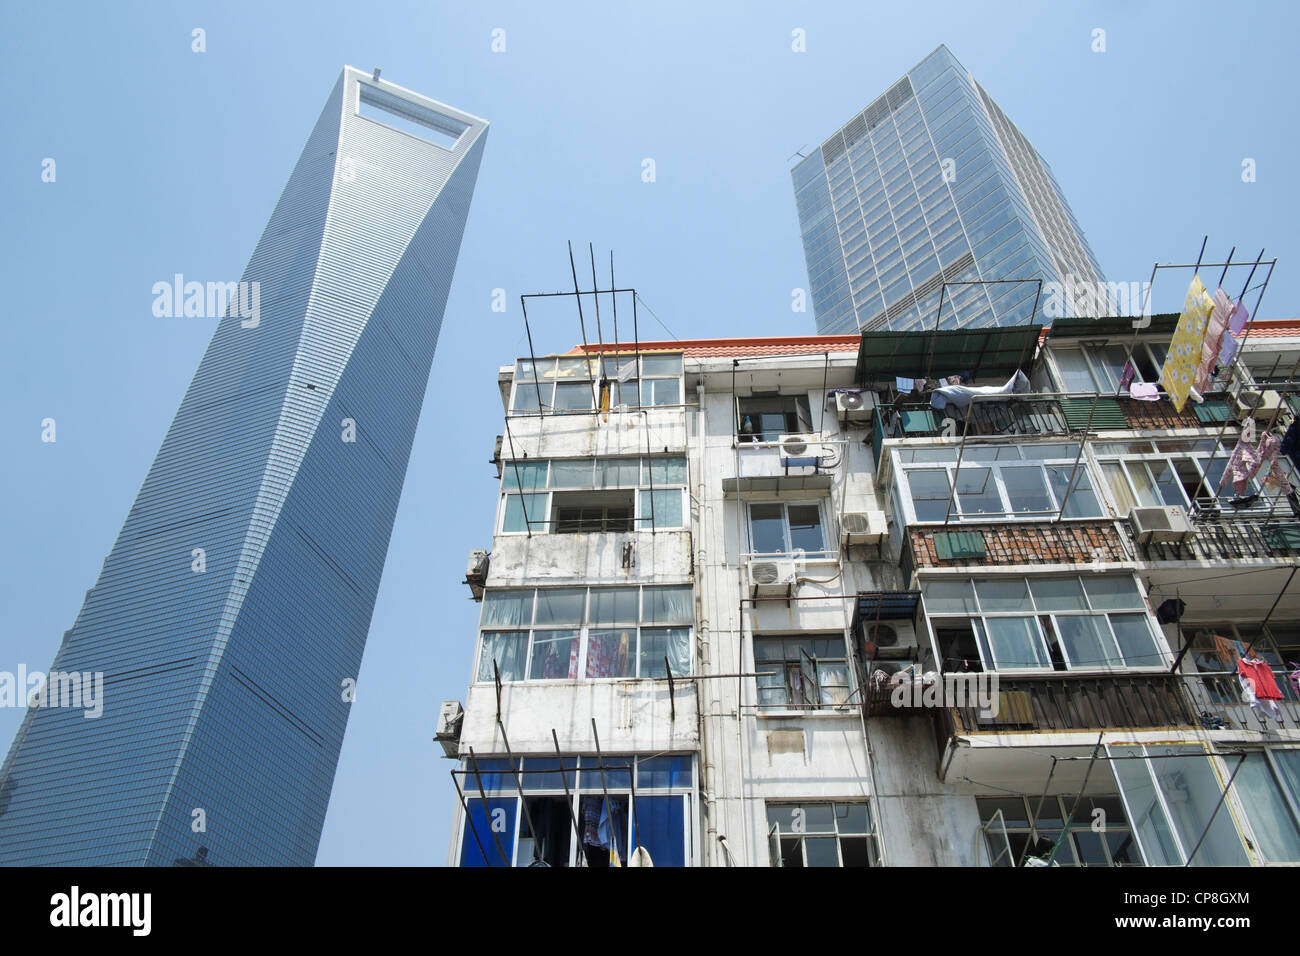 Contraste entre l'ancien immeuble avec les gratte-ciel modernes à l'arrière dans le district financier de Lujiazui à Shanghai Chine Banque D'Images